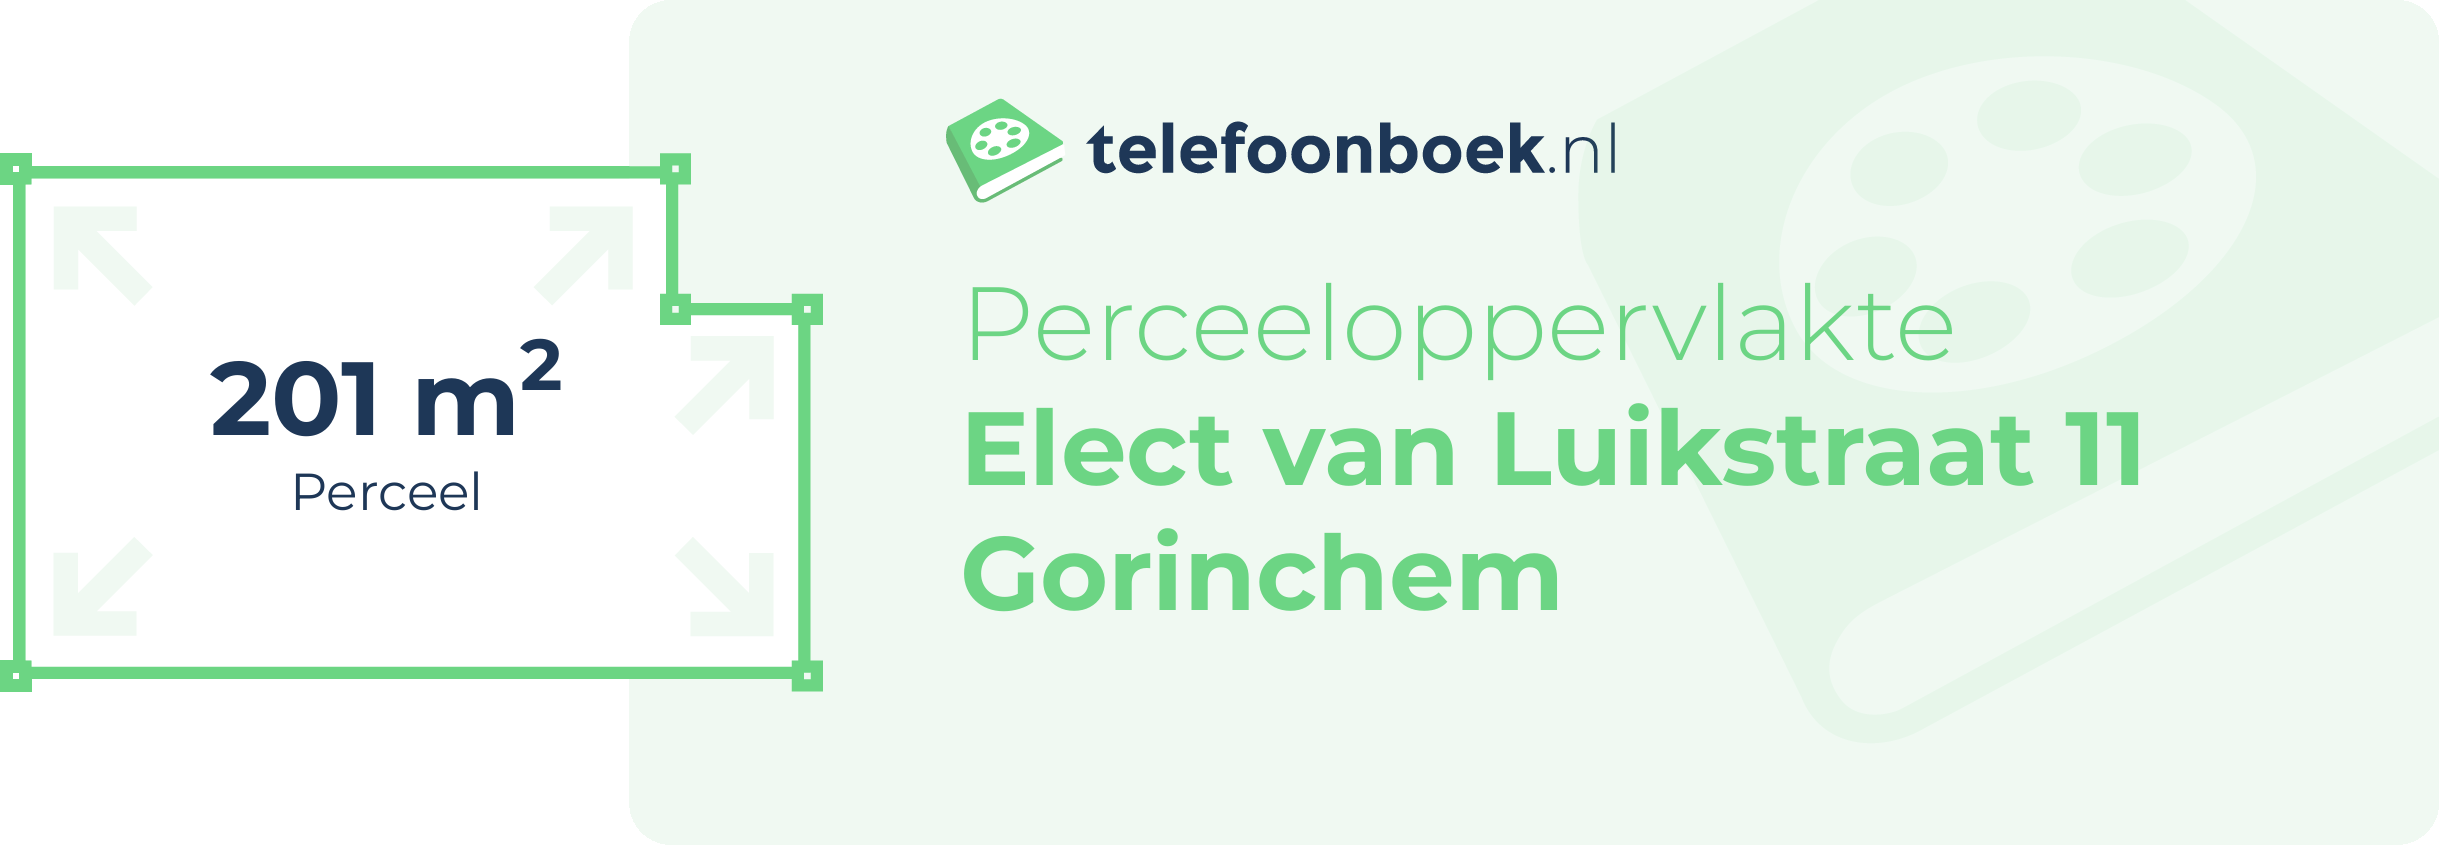 Perceeloppervlakte Elect Van Luikstraat 11 Gorinchem